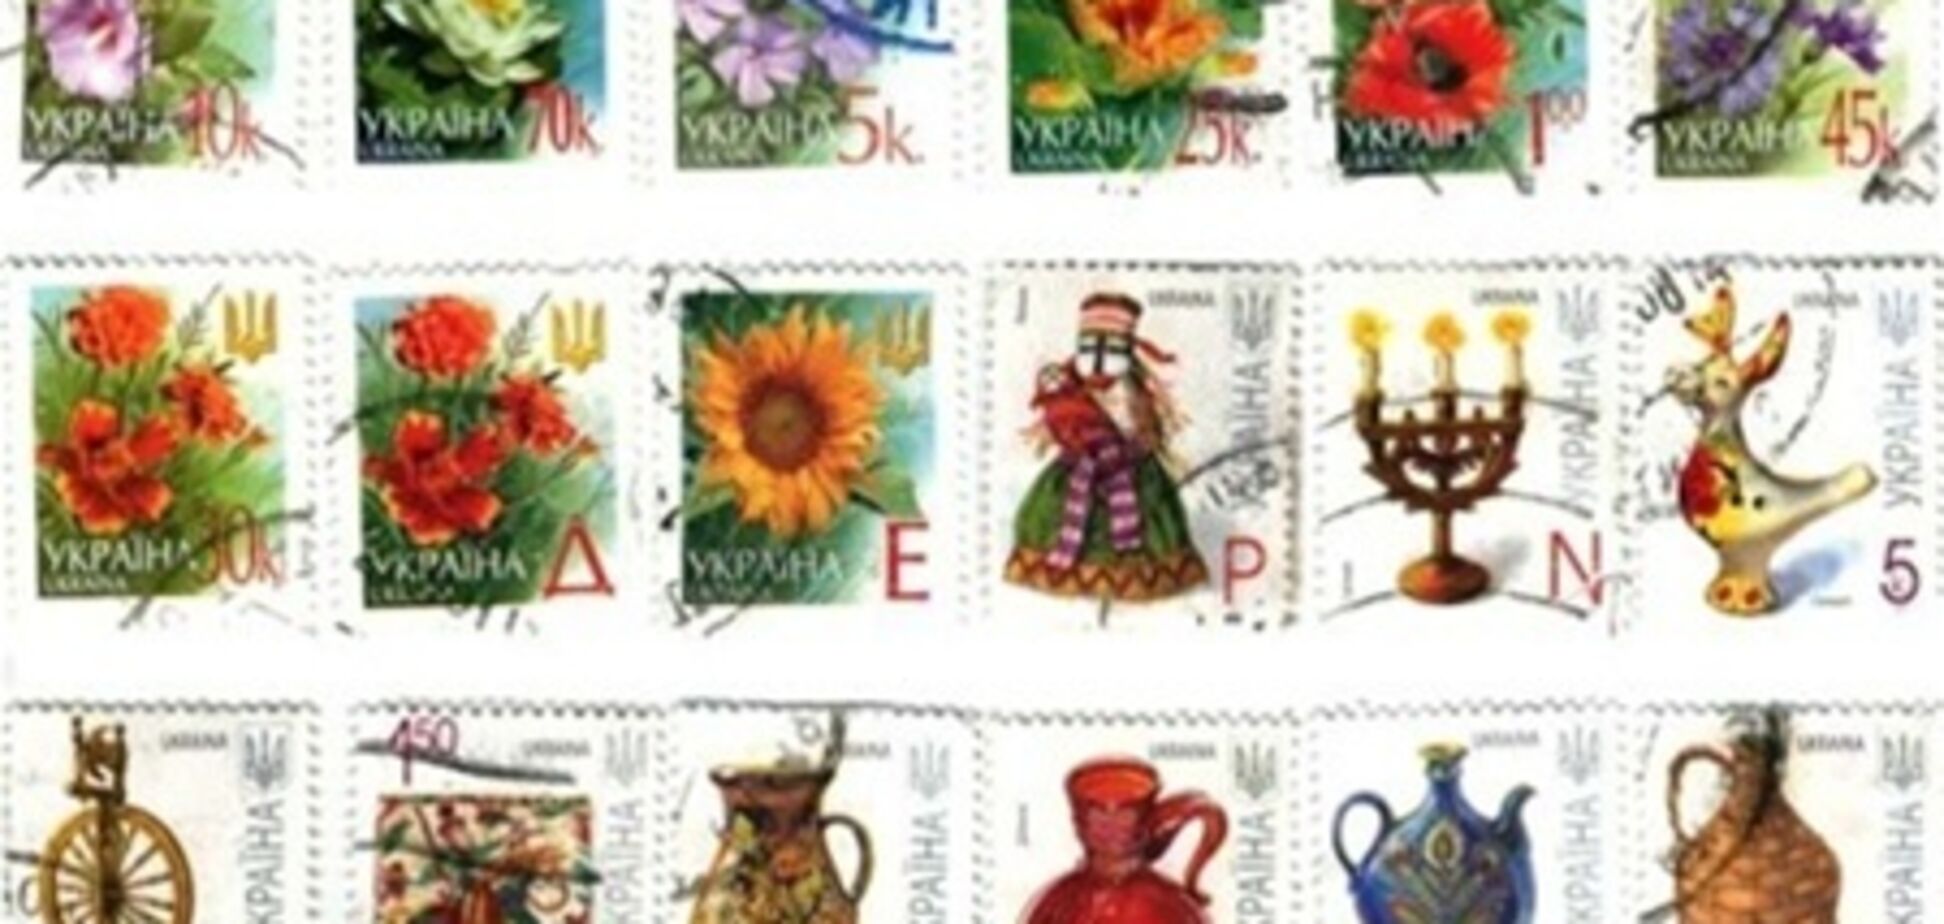 Днепропетровский суд 'переплюнул' все суды Украины в расходах на марки